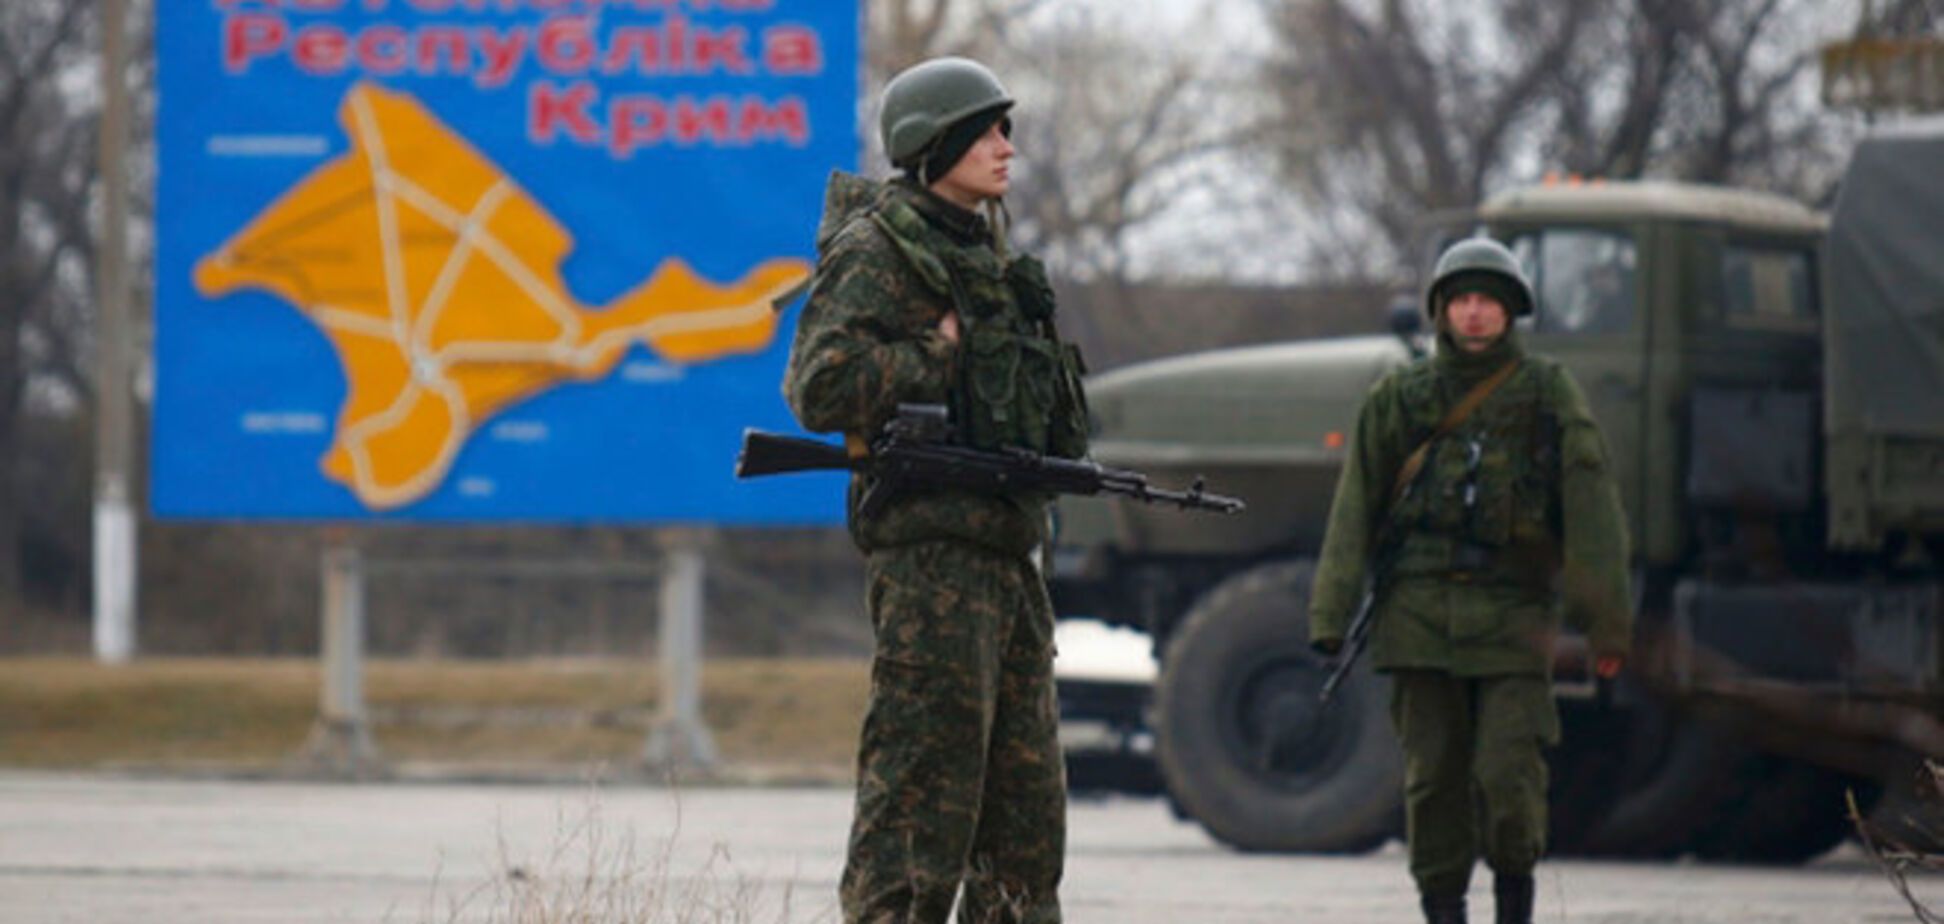 Оккупанты развернули тотальное наступление на крымских татар - Чубаров